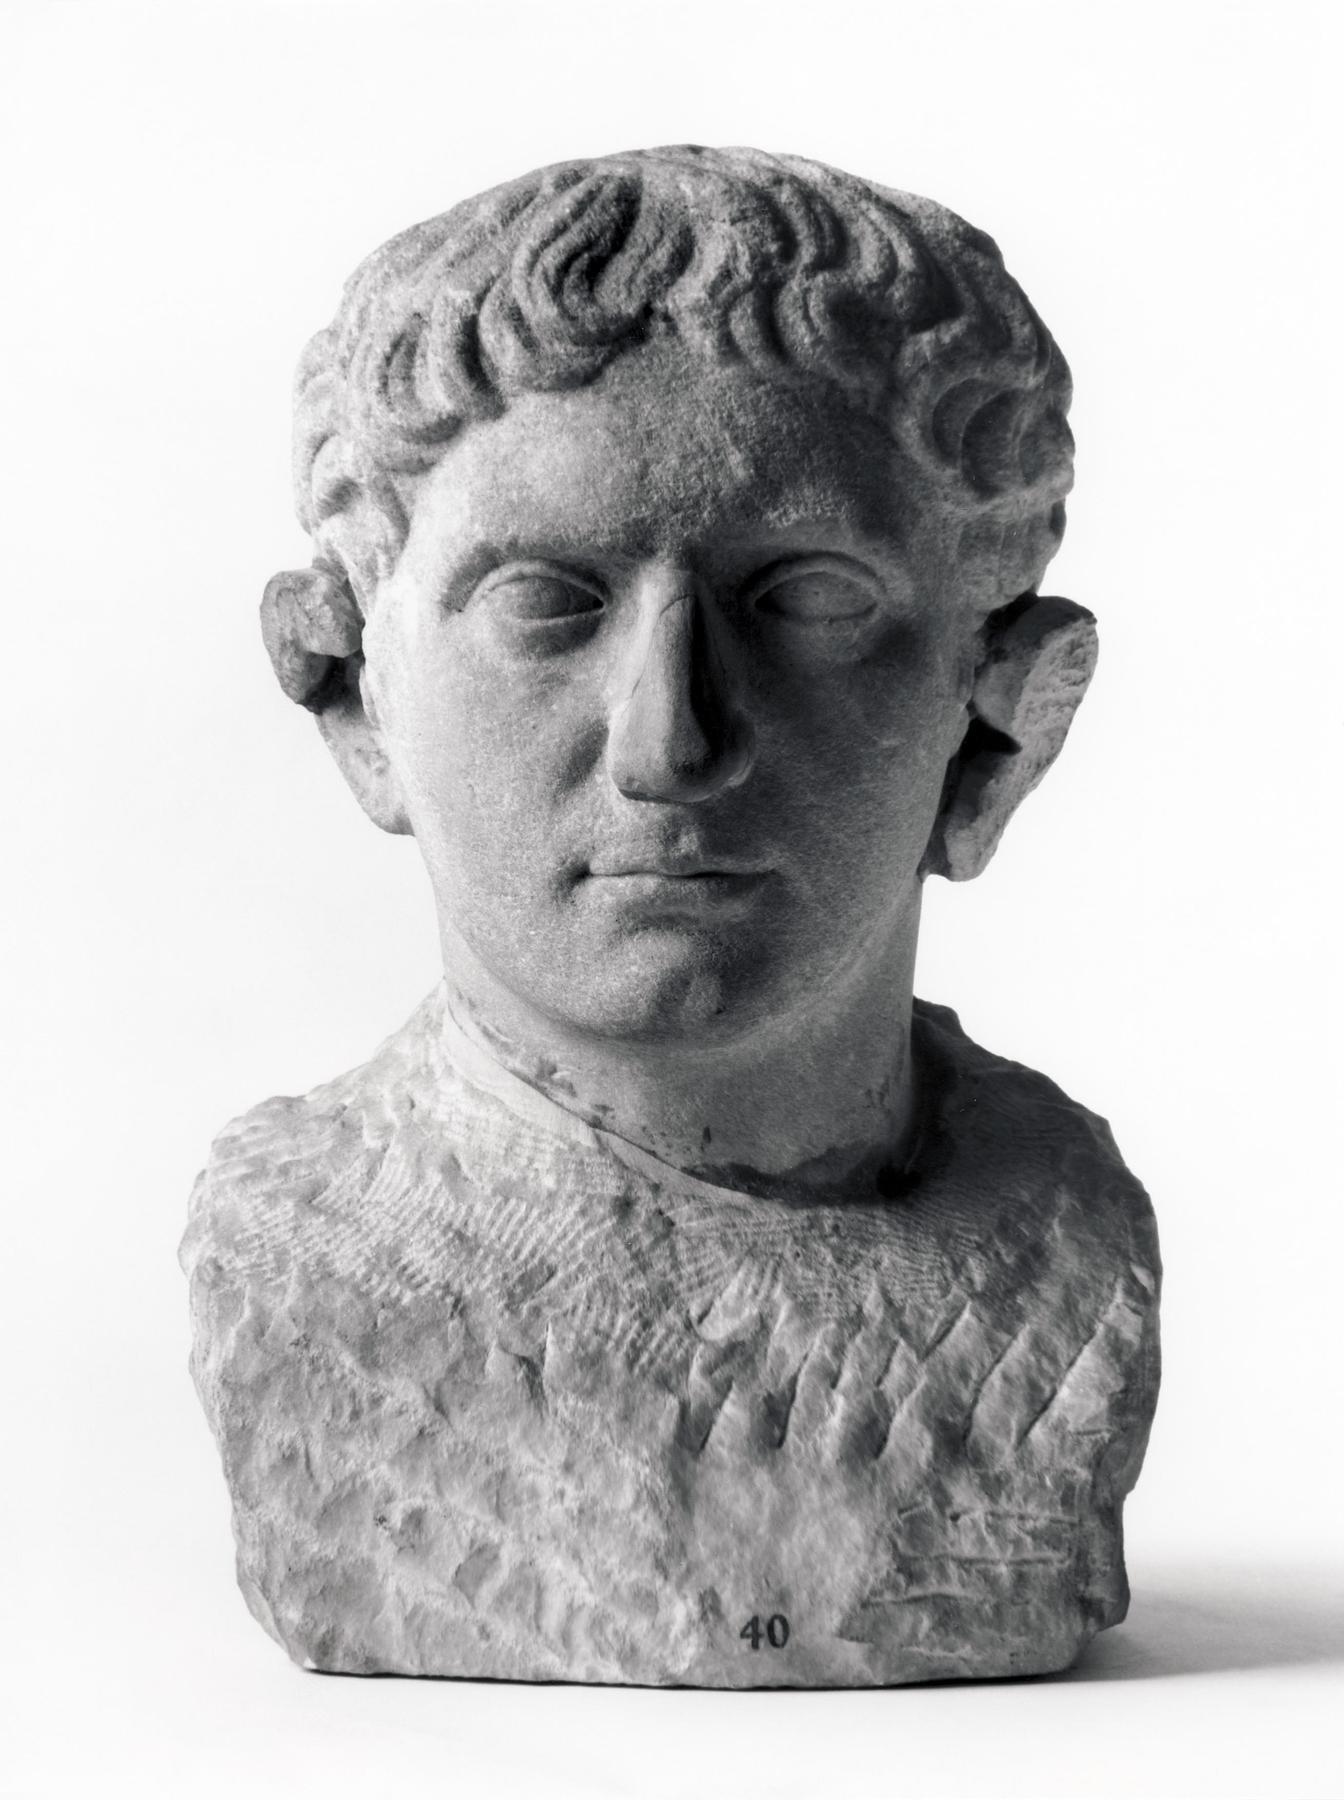 Portrait sculpture of a man, H1440